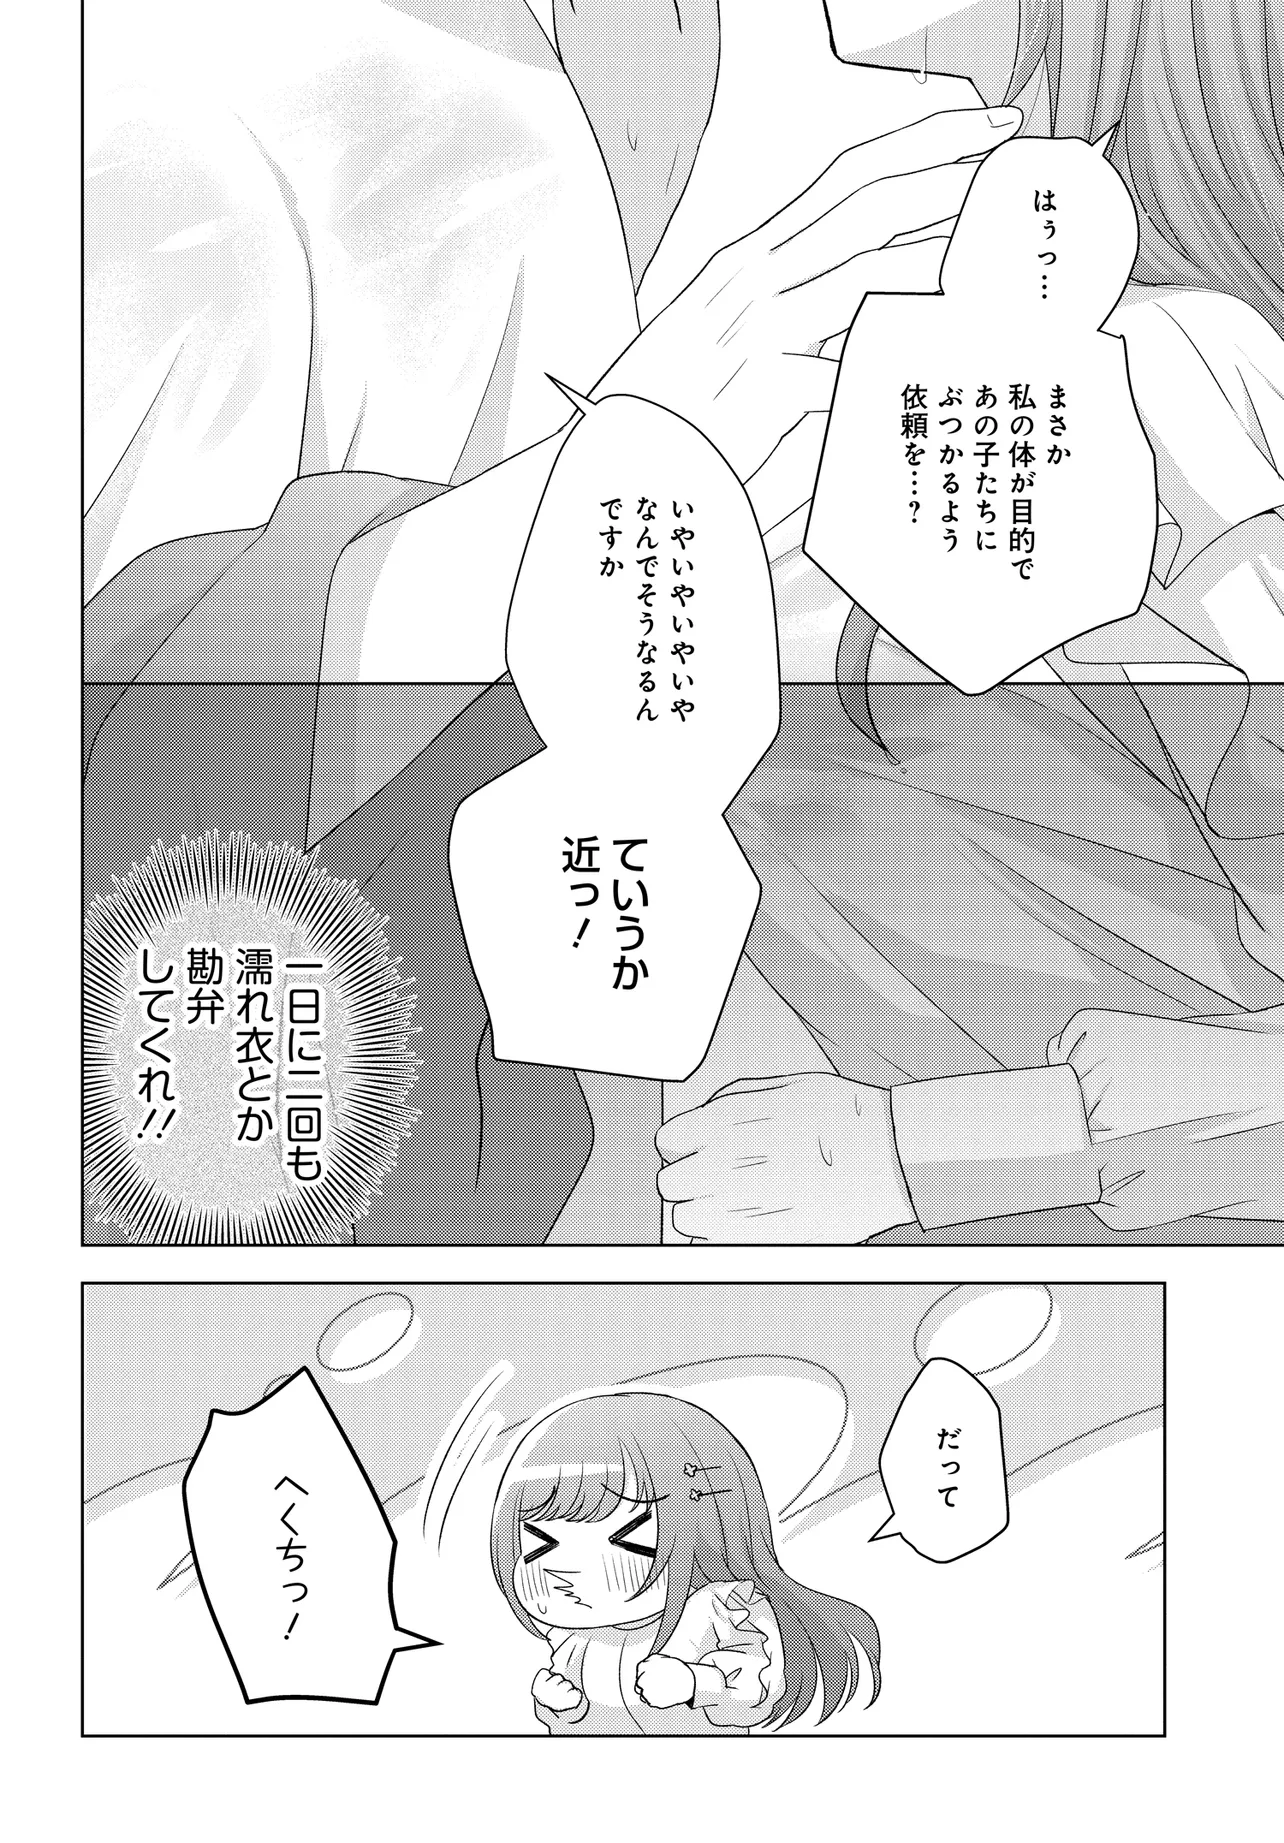 Suufun Go no Mirai ga Wakaru you ni Natta kedo, Onnagokoro wa Wakaranai. - Chapter 1 - Page 34